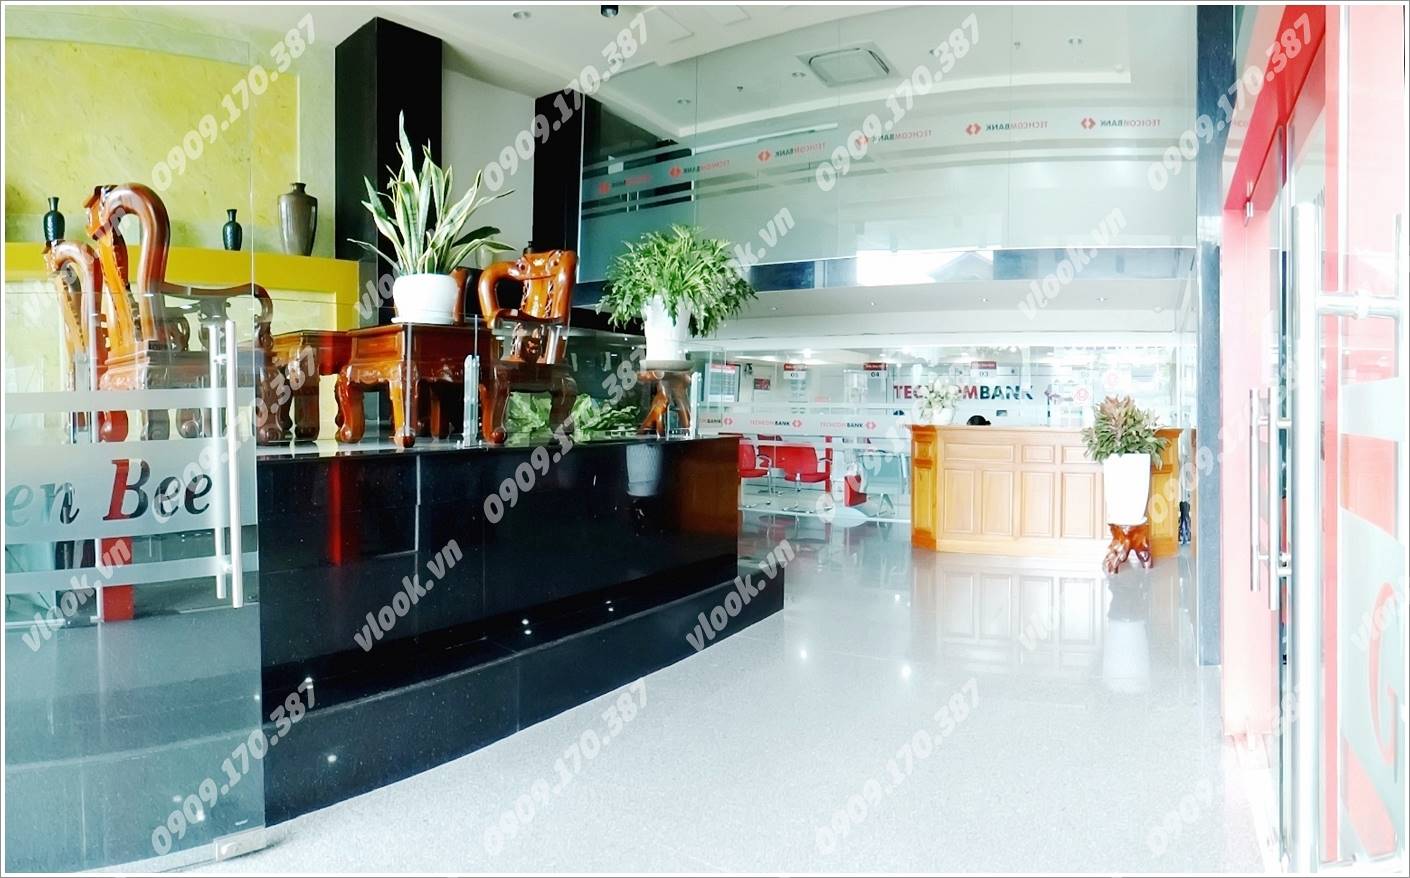 Cao ốc cho thuê văn phòng Golden Bee Building, Nguyễn Kiệm Quận Phú Nhuận, TPHCM - vlook.vn